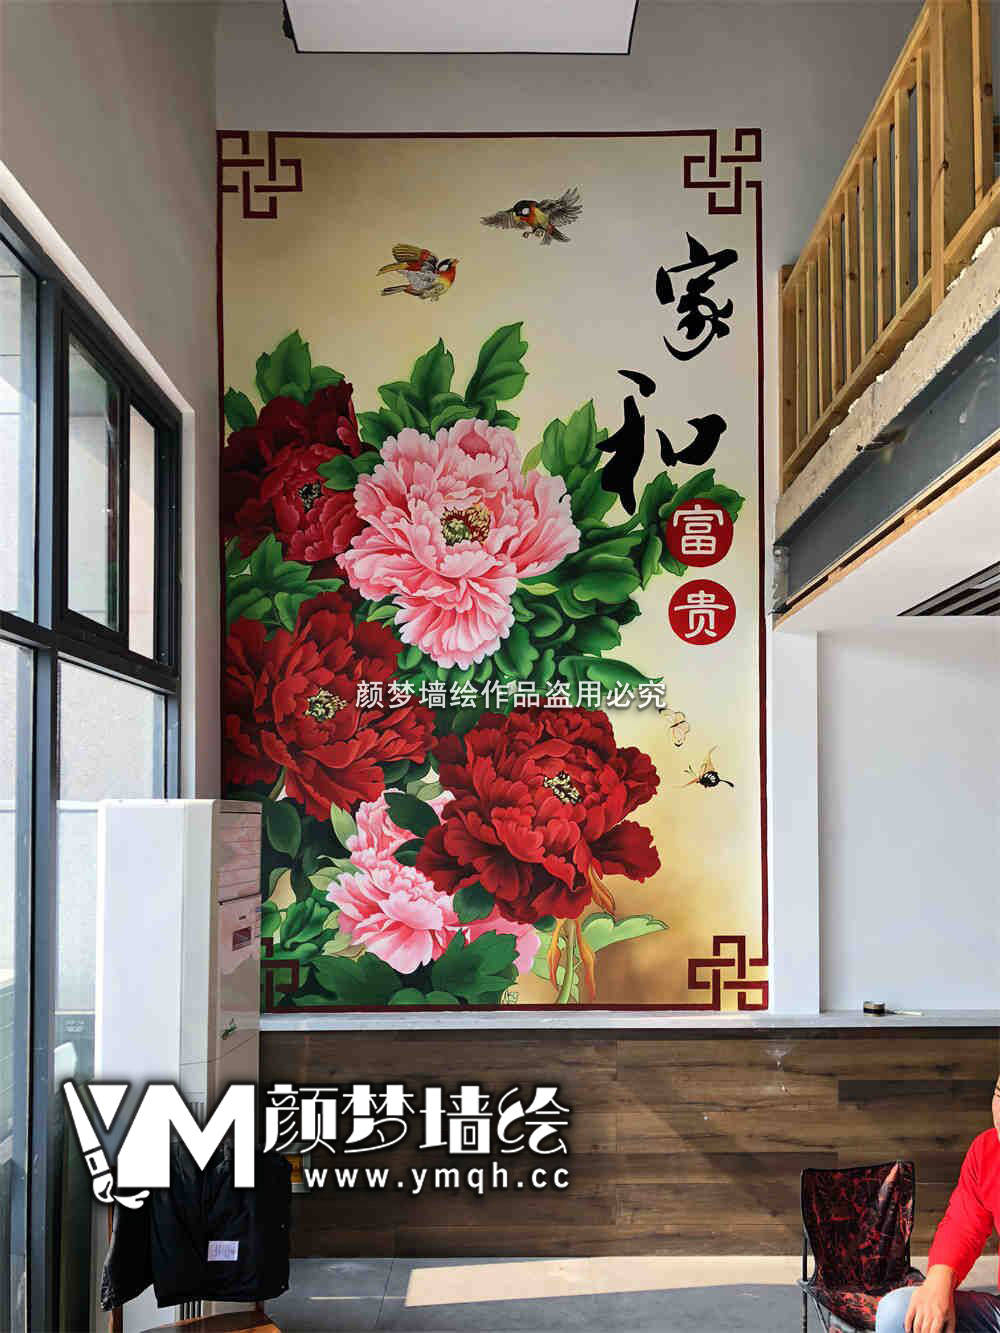 南宁经济技术开发区墙体彩绘探秘——吴圩镇墙绘公司如何打造涂鸦“网红墙”